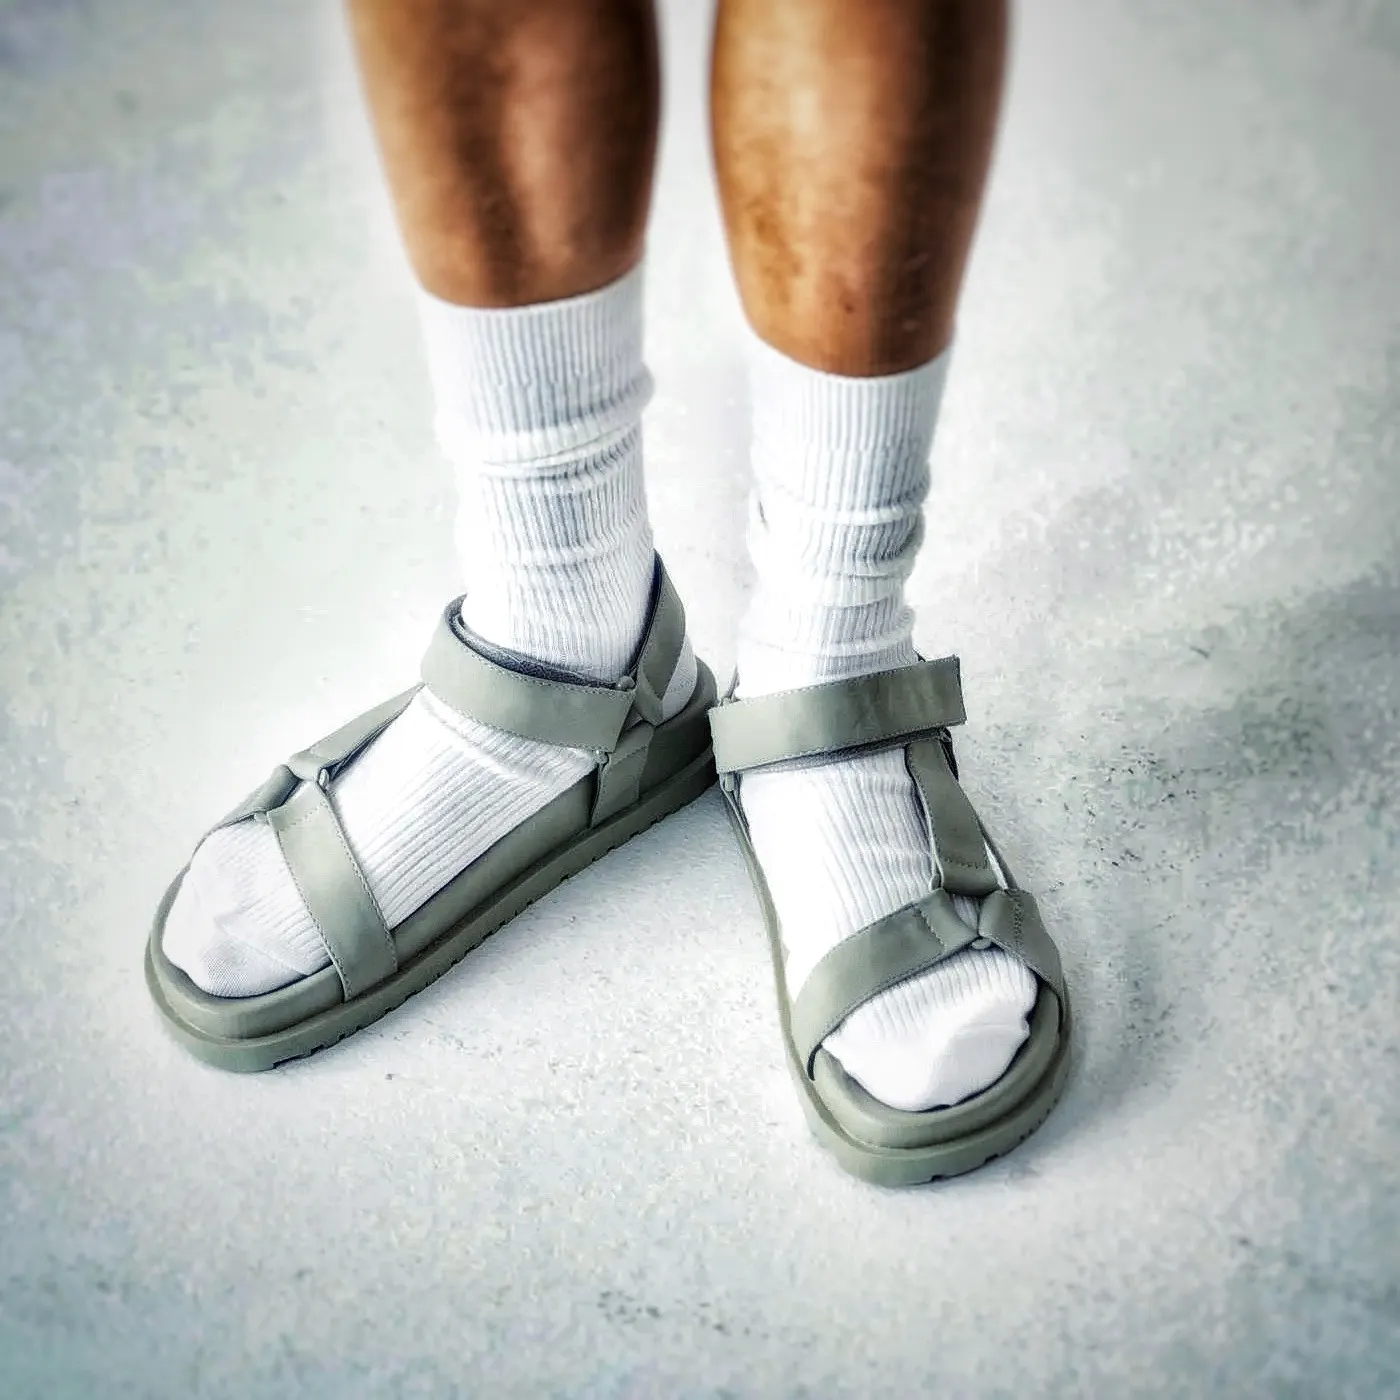 Zwei Füße mit weißen Socken in grauen Sandalen